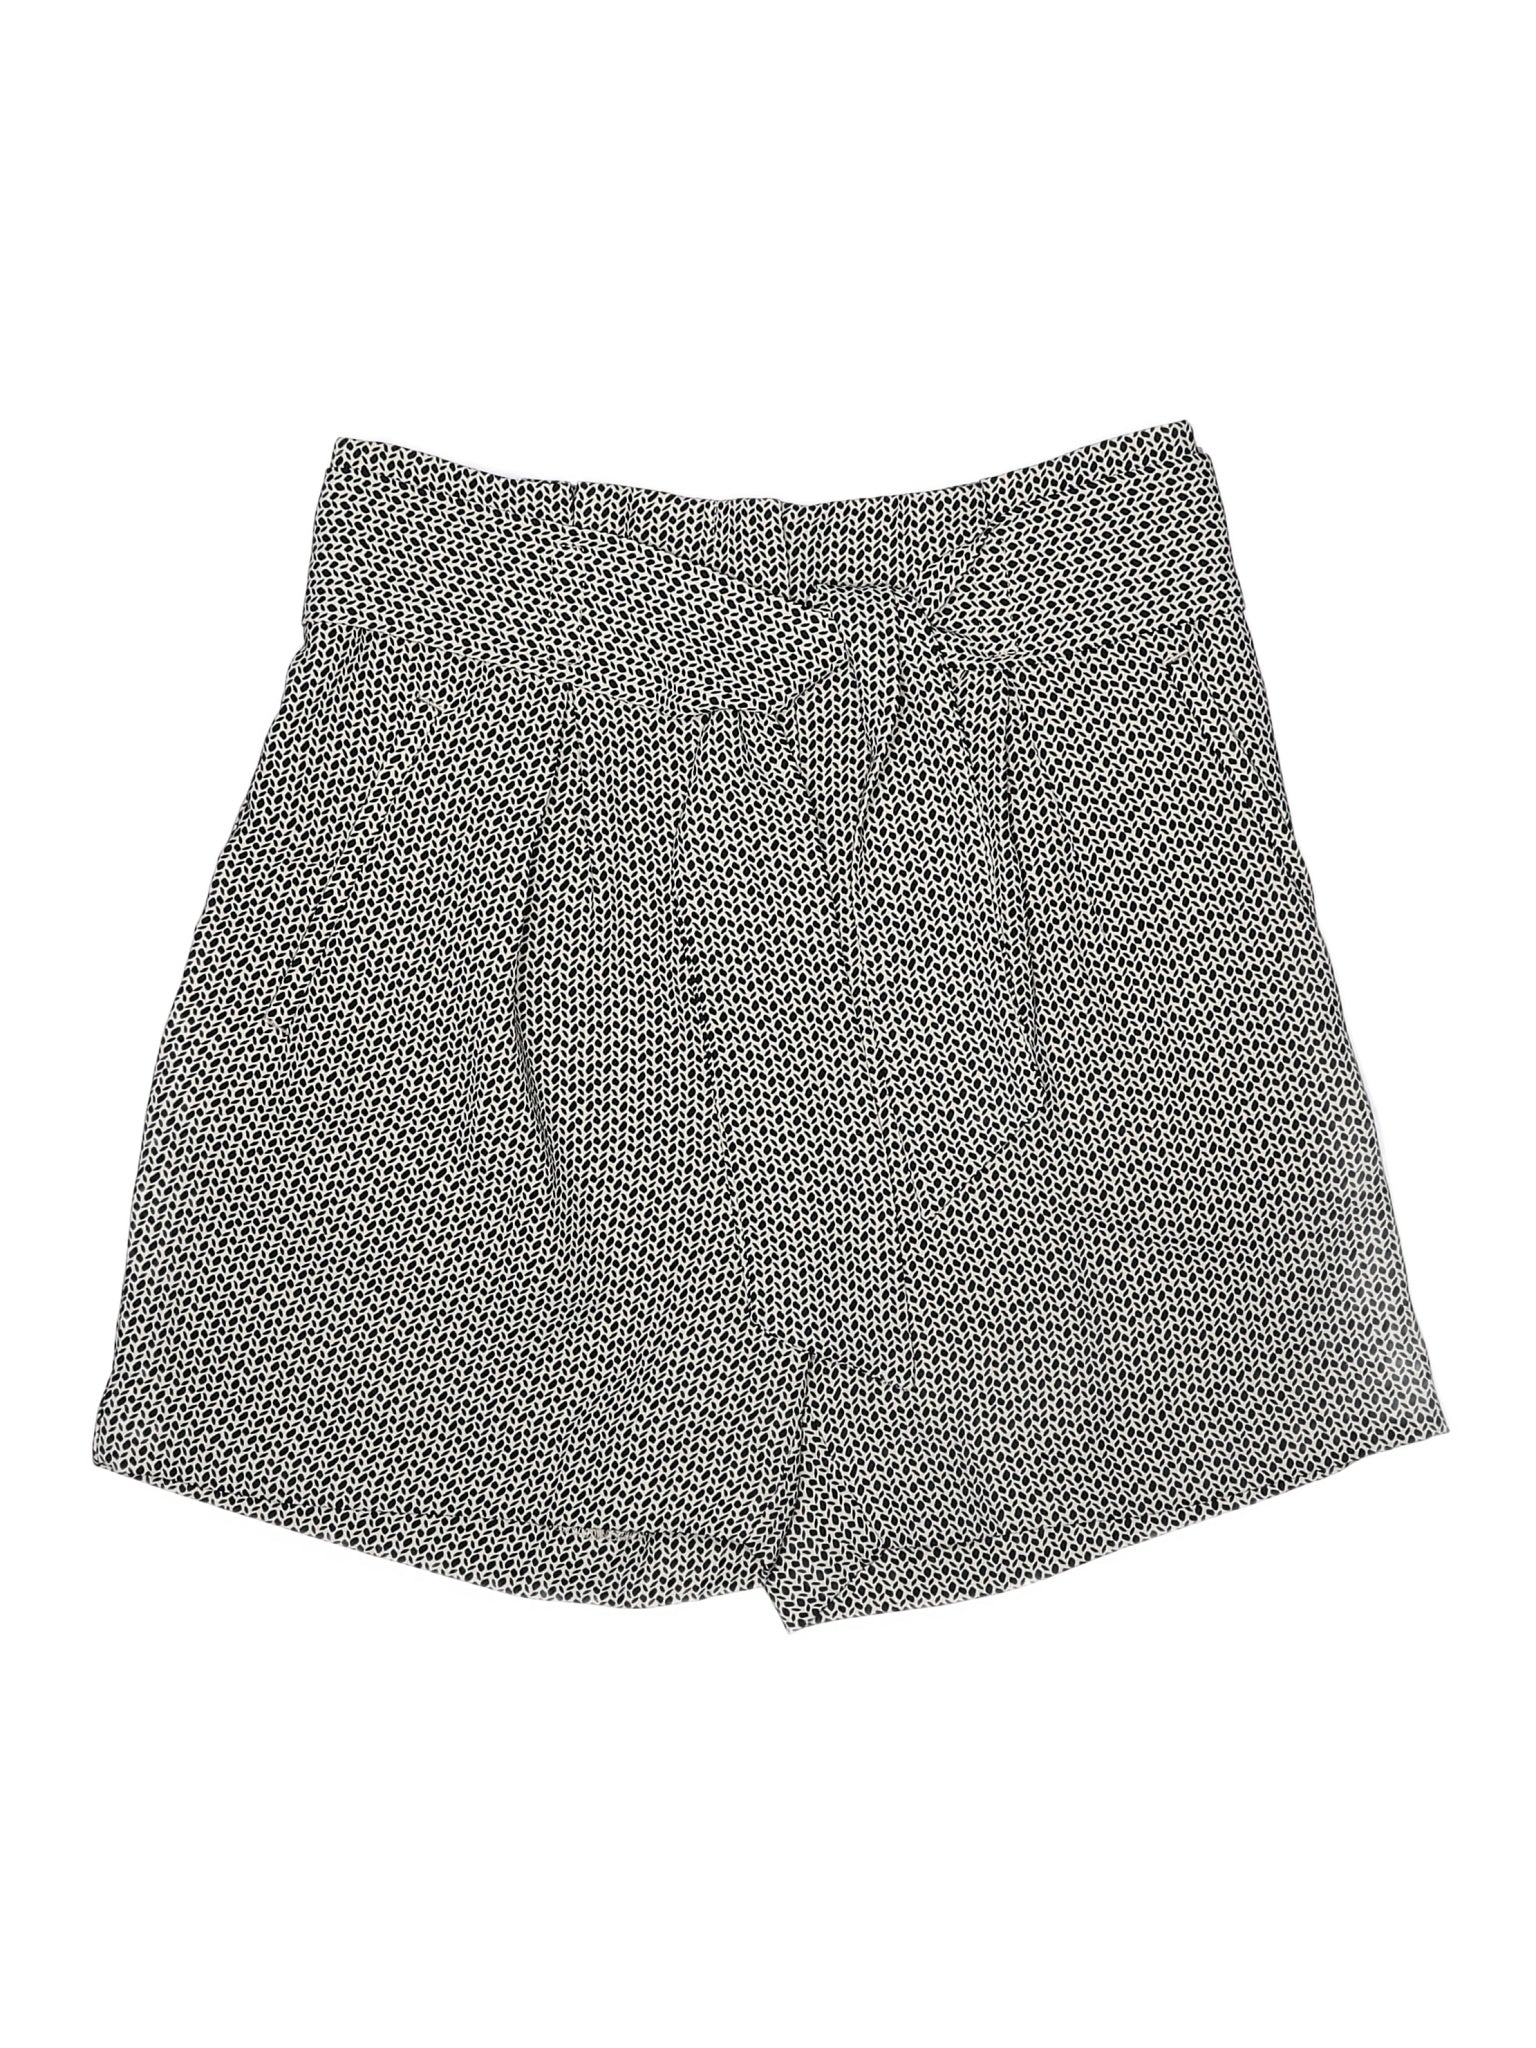 Dressy Shorts size - 4